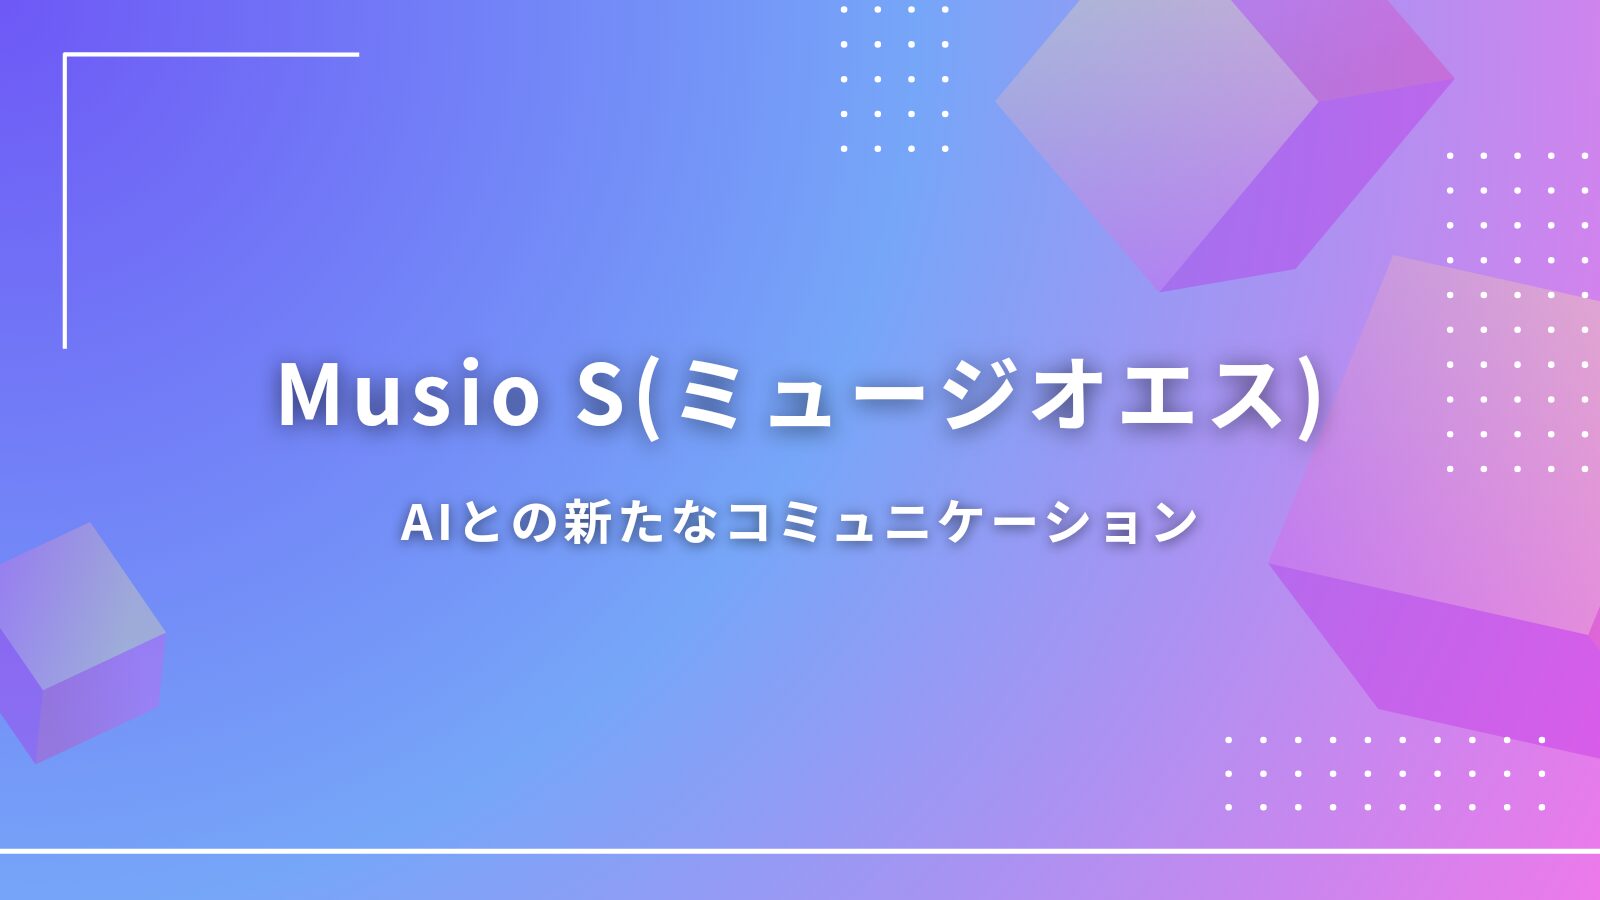 Musio S(ミュージオエス)AIとの新たなコミュニケーションのアイキャッチ画像